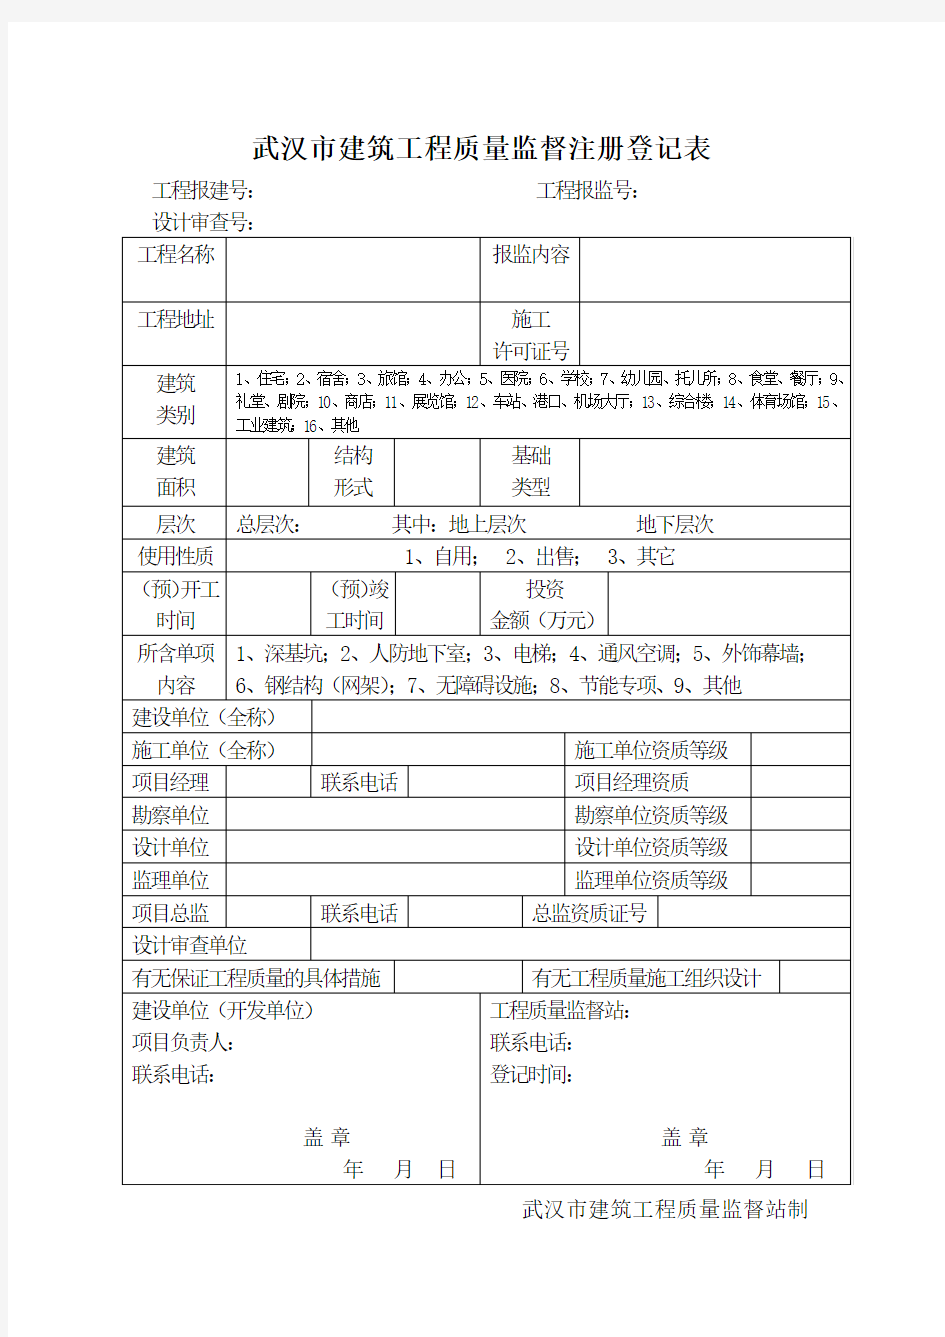 1、武汉市建筑工程质量监督注册登记表